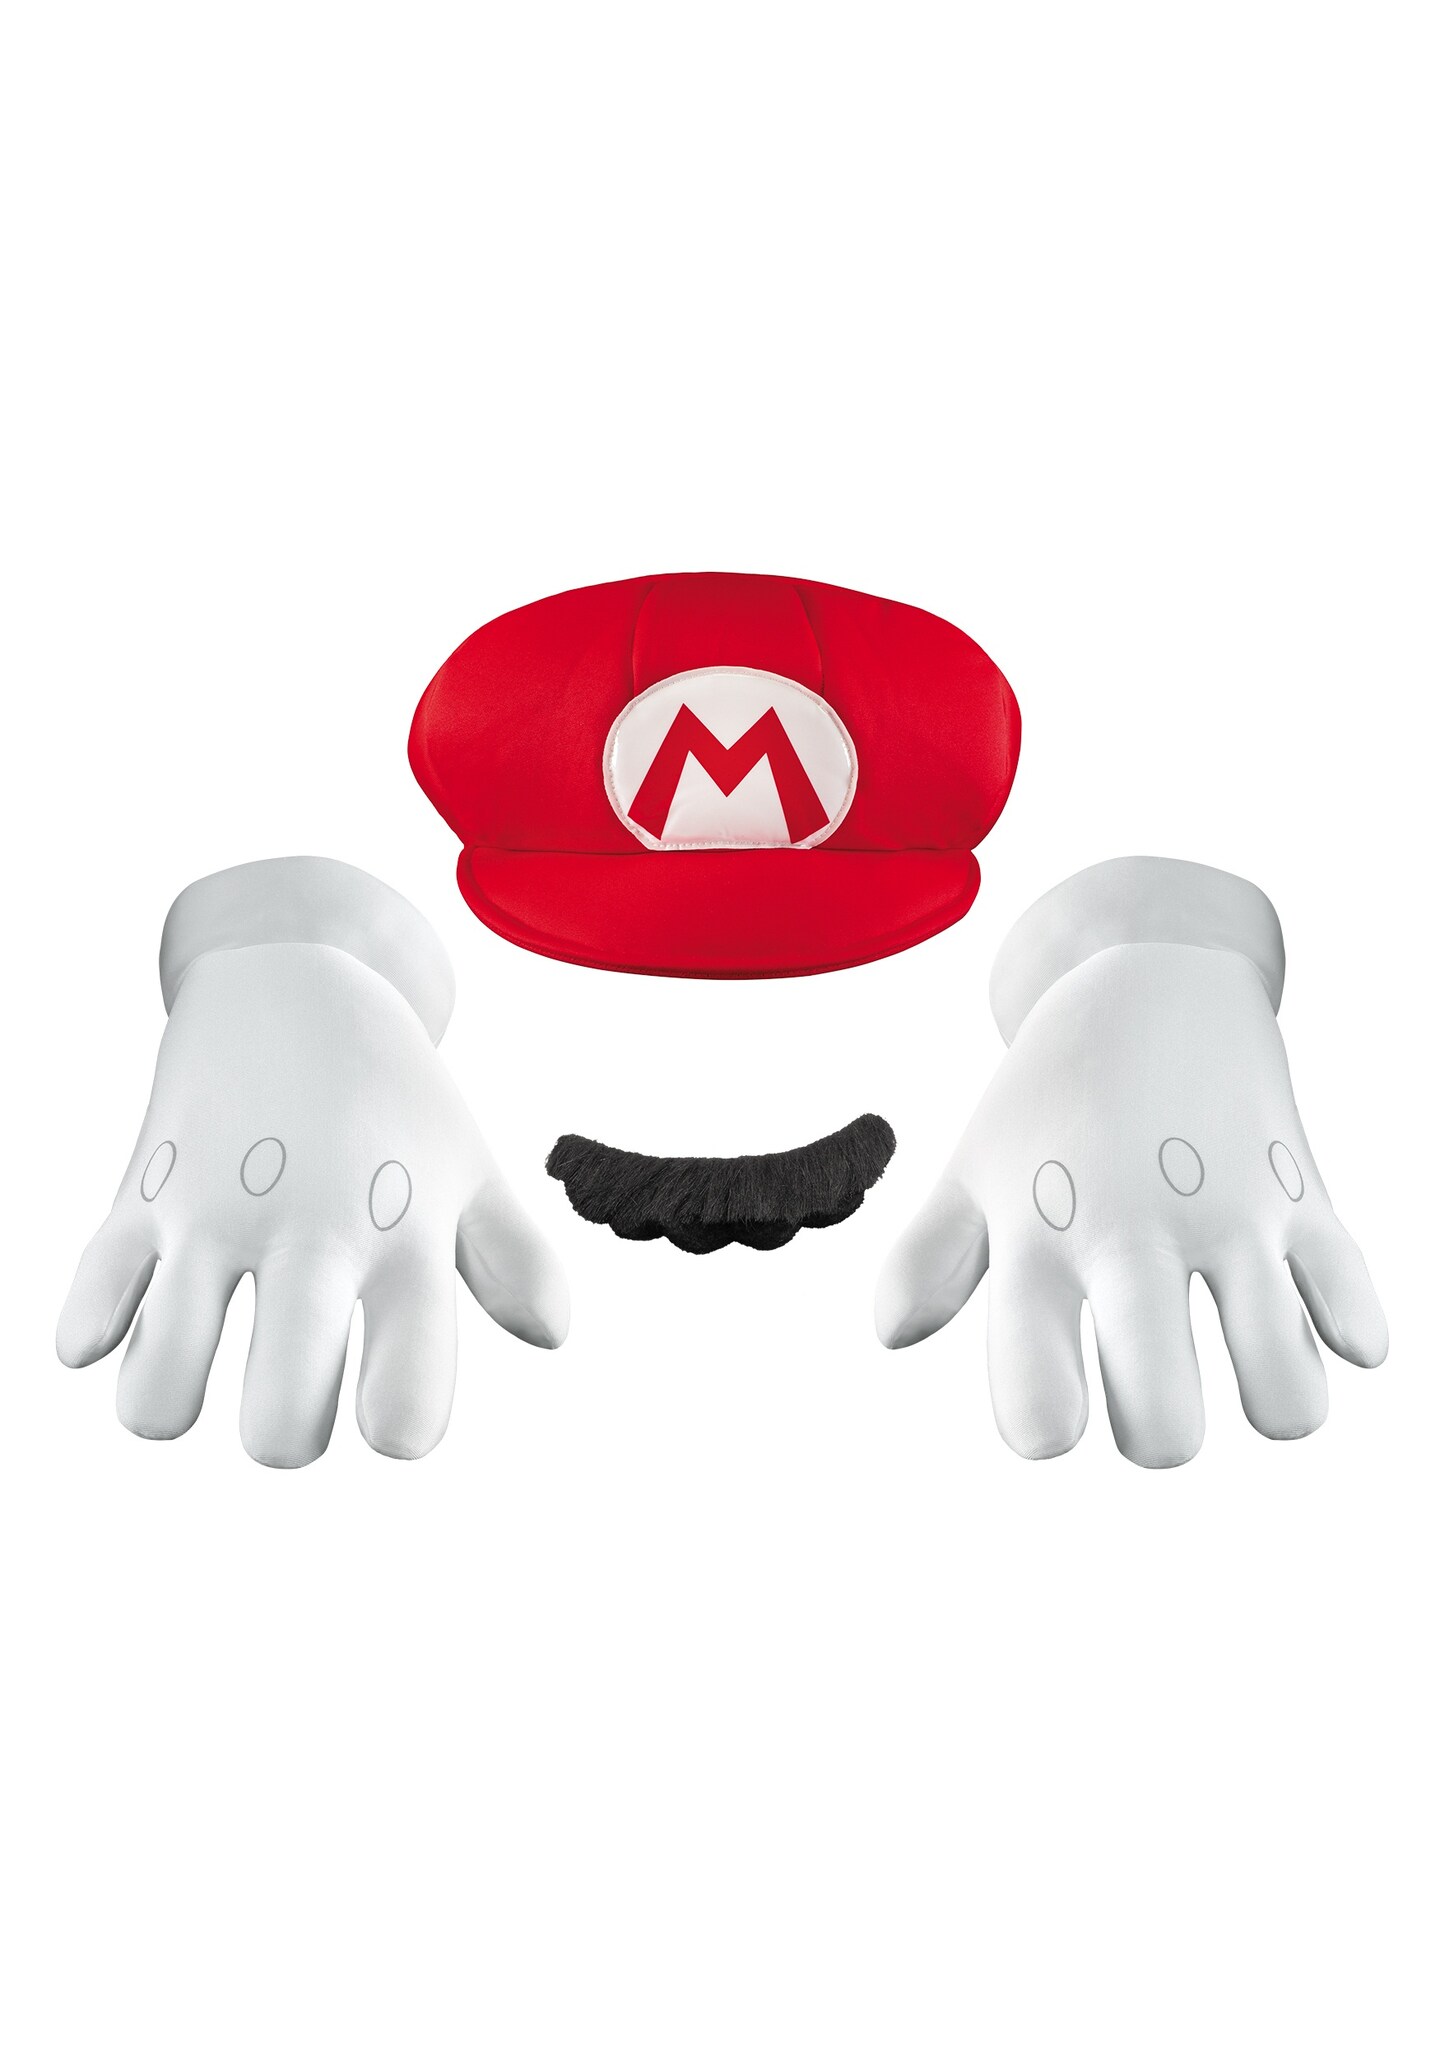 Super Mario Bros. Mario Adult Costume Accessory Kit